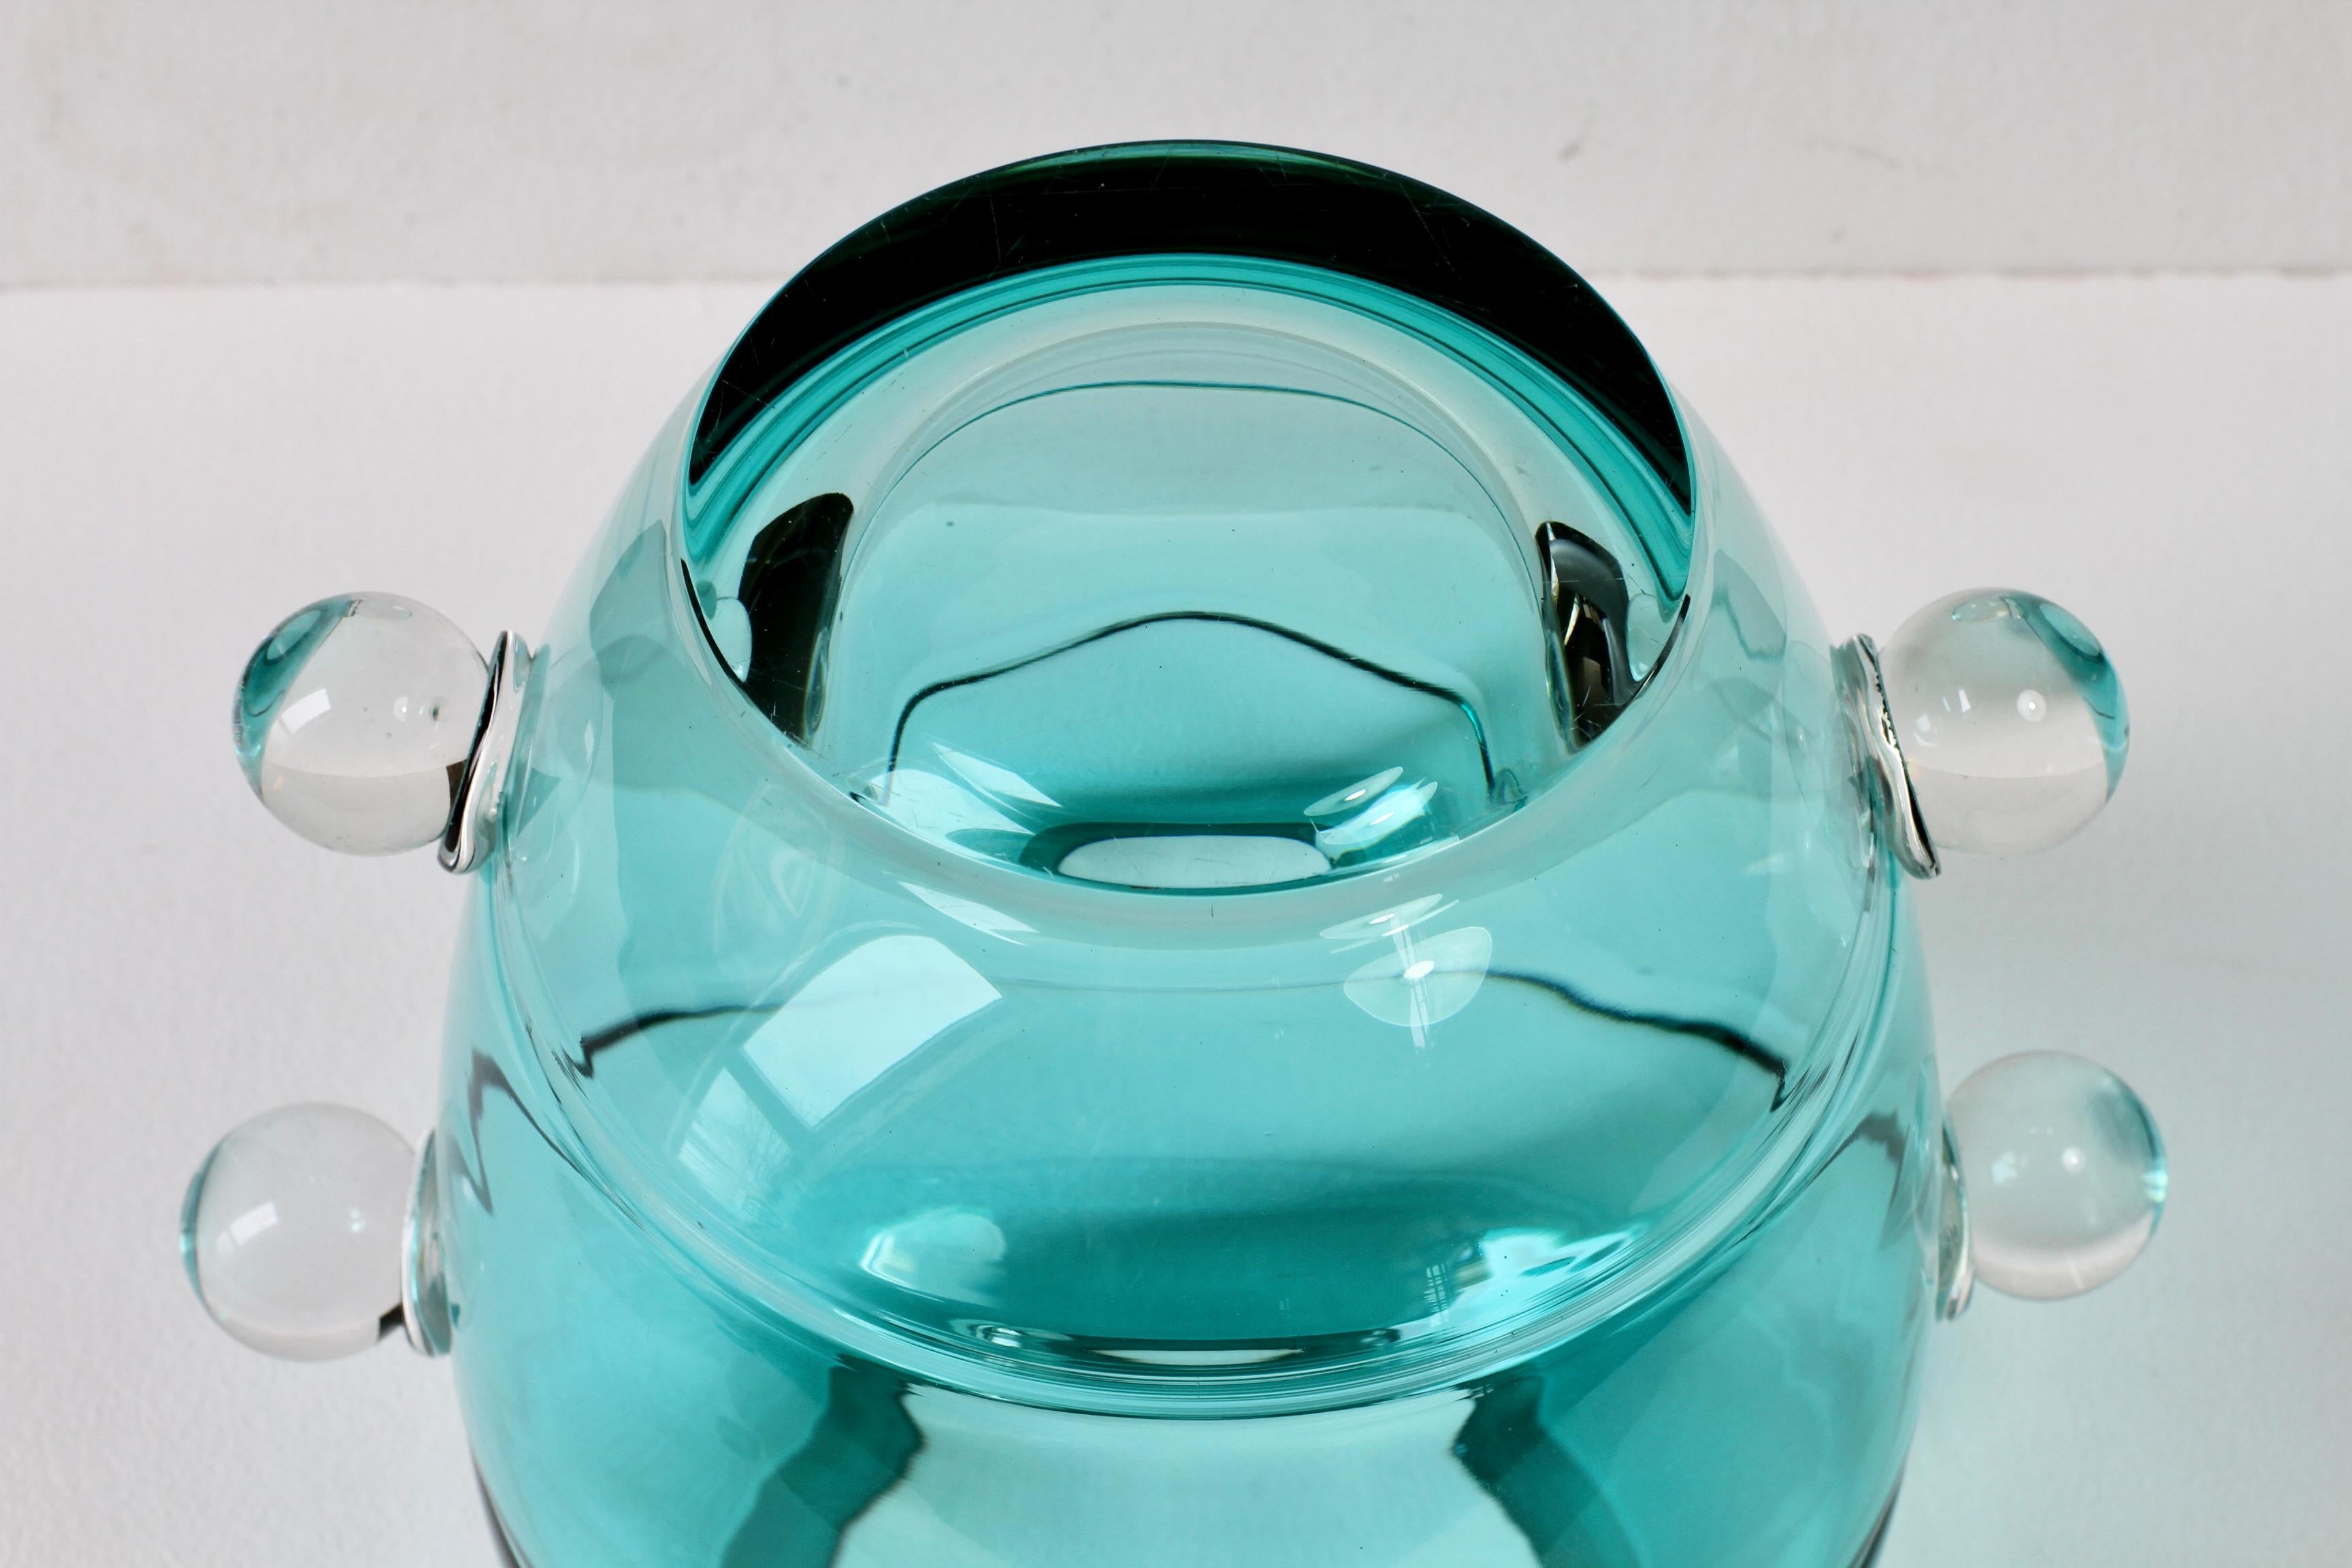 Impresionante y raro jarrón de cristal italiano Seguso, grande y pesado, con textura, de la época moderna de mediados de siglo, de Seguso Vetri d'Arte Murano, Italia, hacia los años 80 / principios de los 90. Elegante en su forma y mostrando una